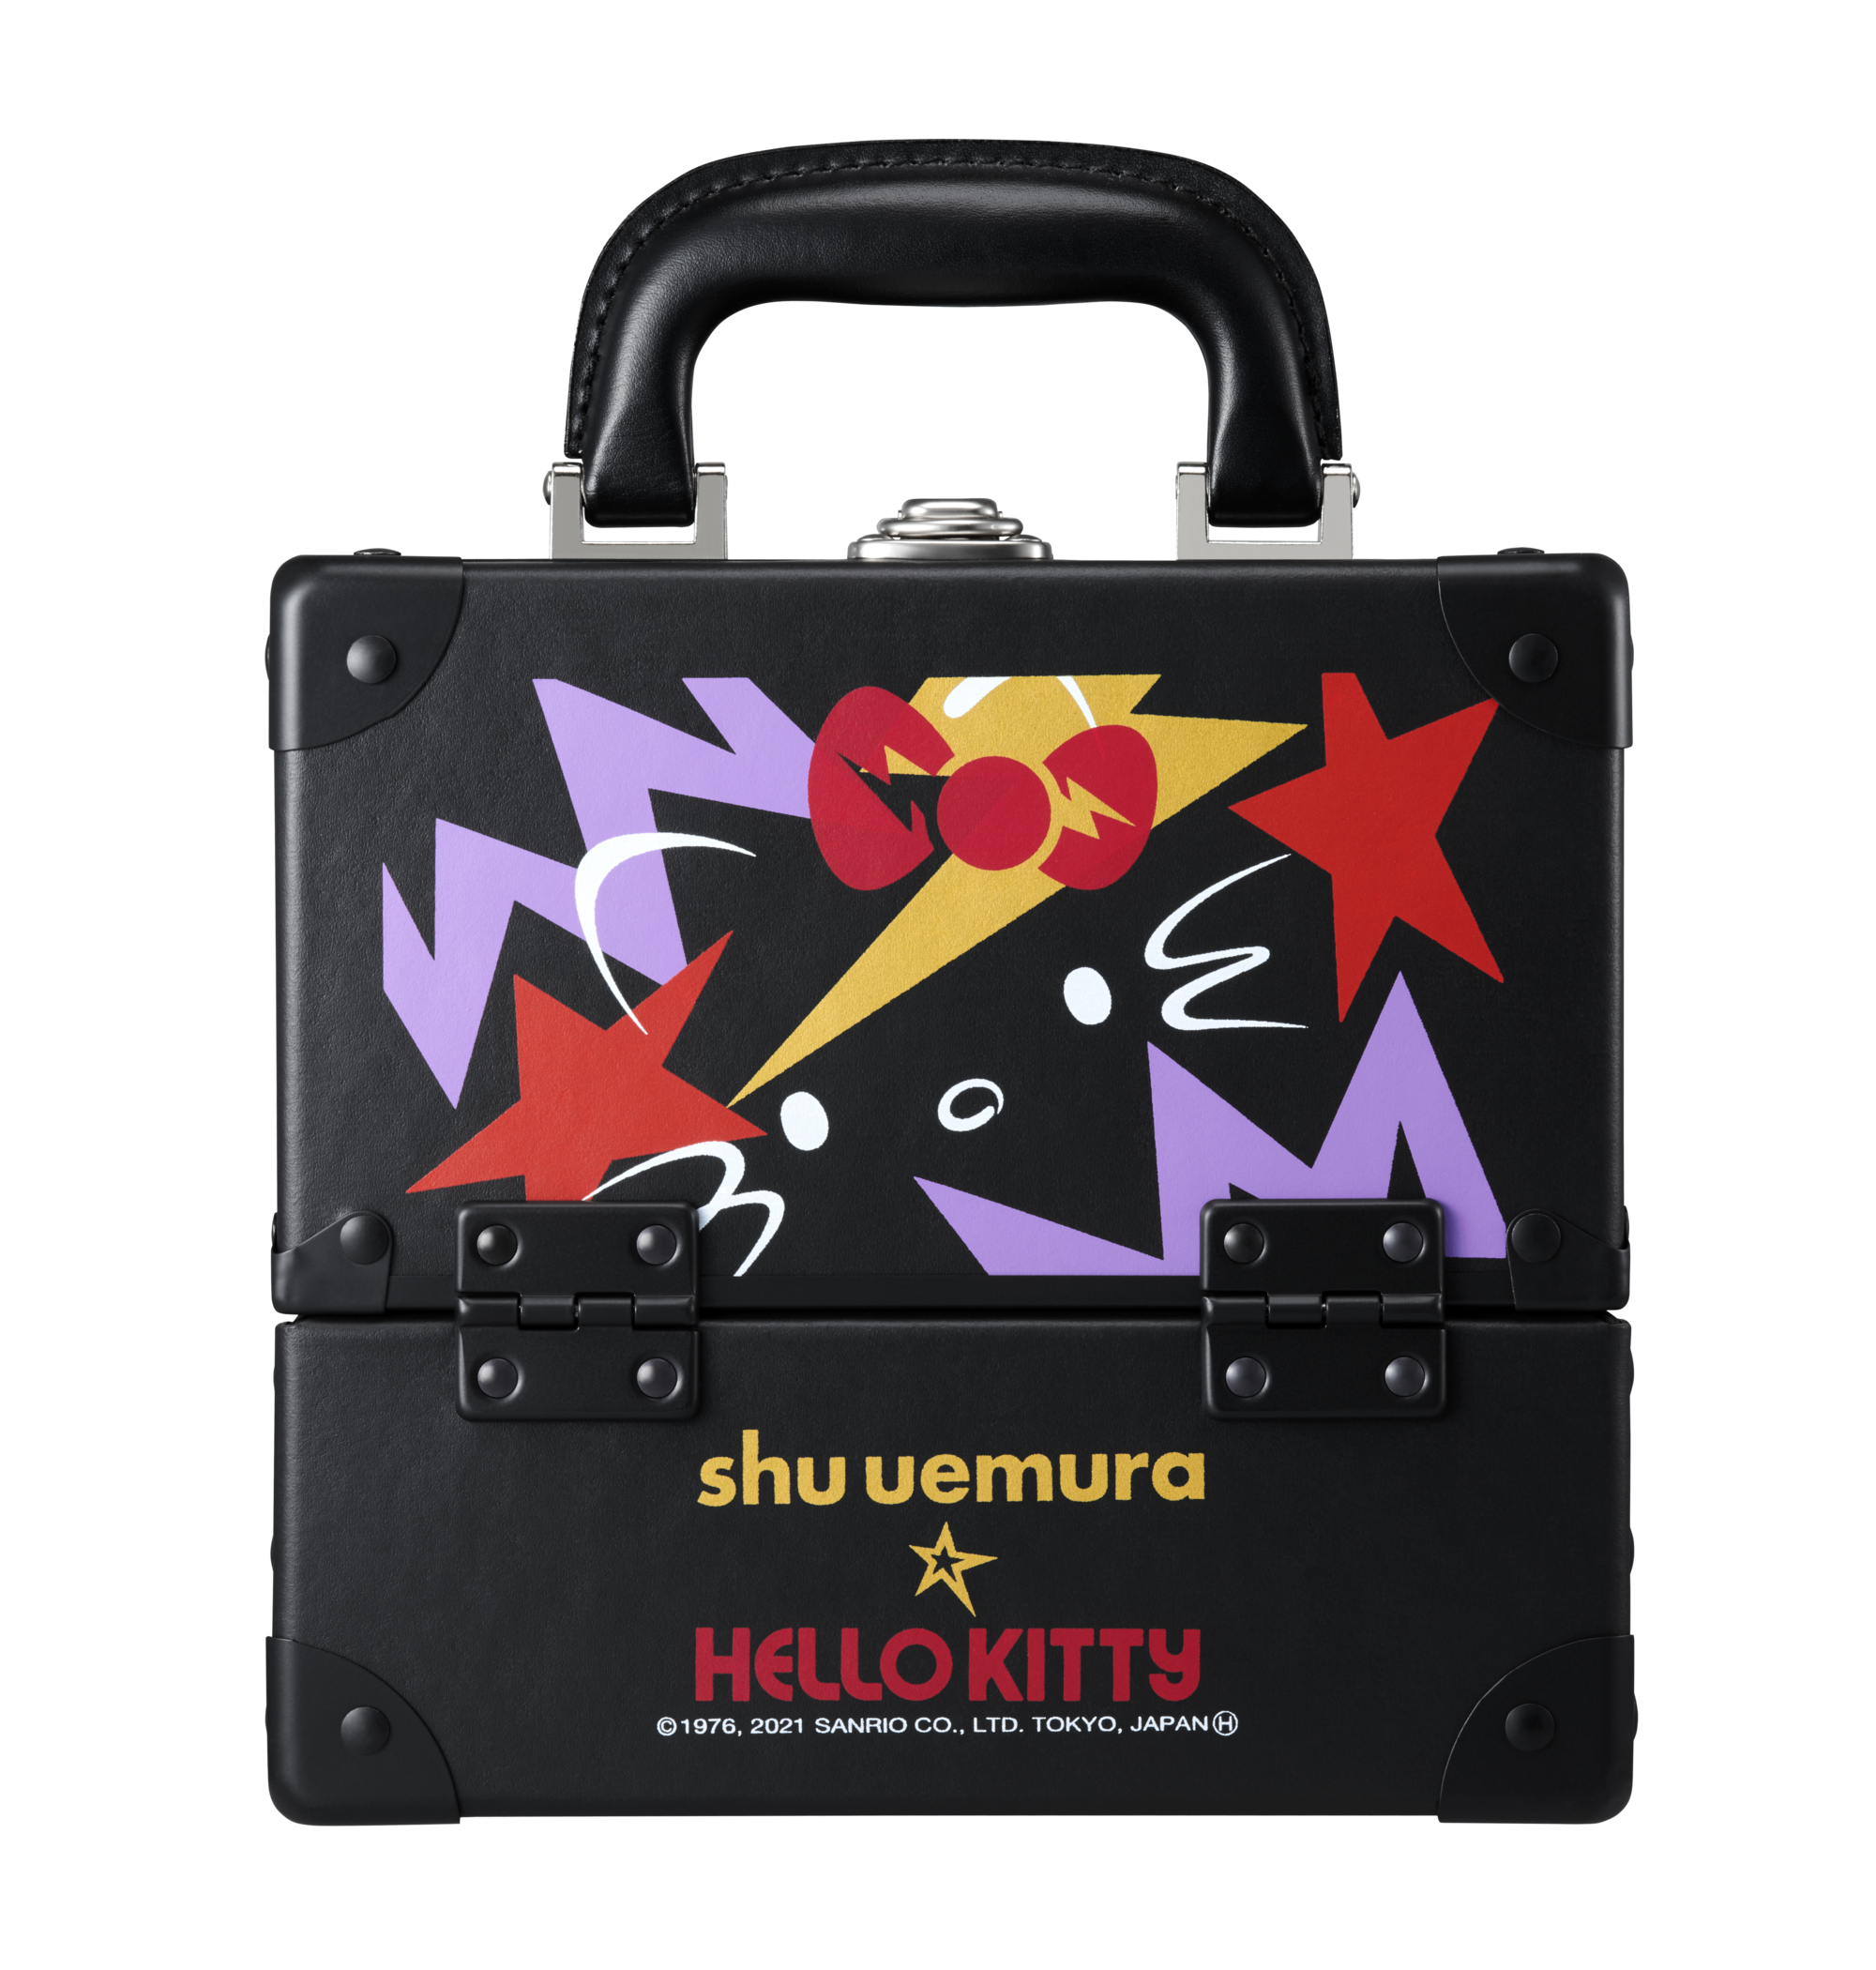 「shu uemura x HELLO KITTY」ロックザパーティ プレミアム メイクアップ ボックス